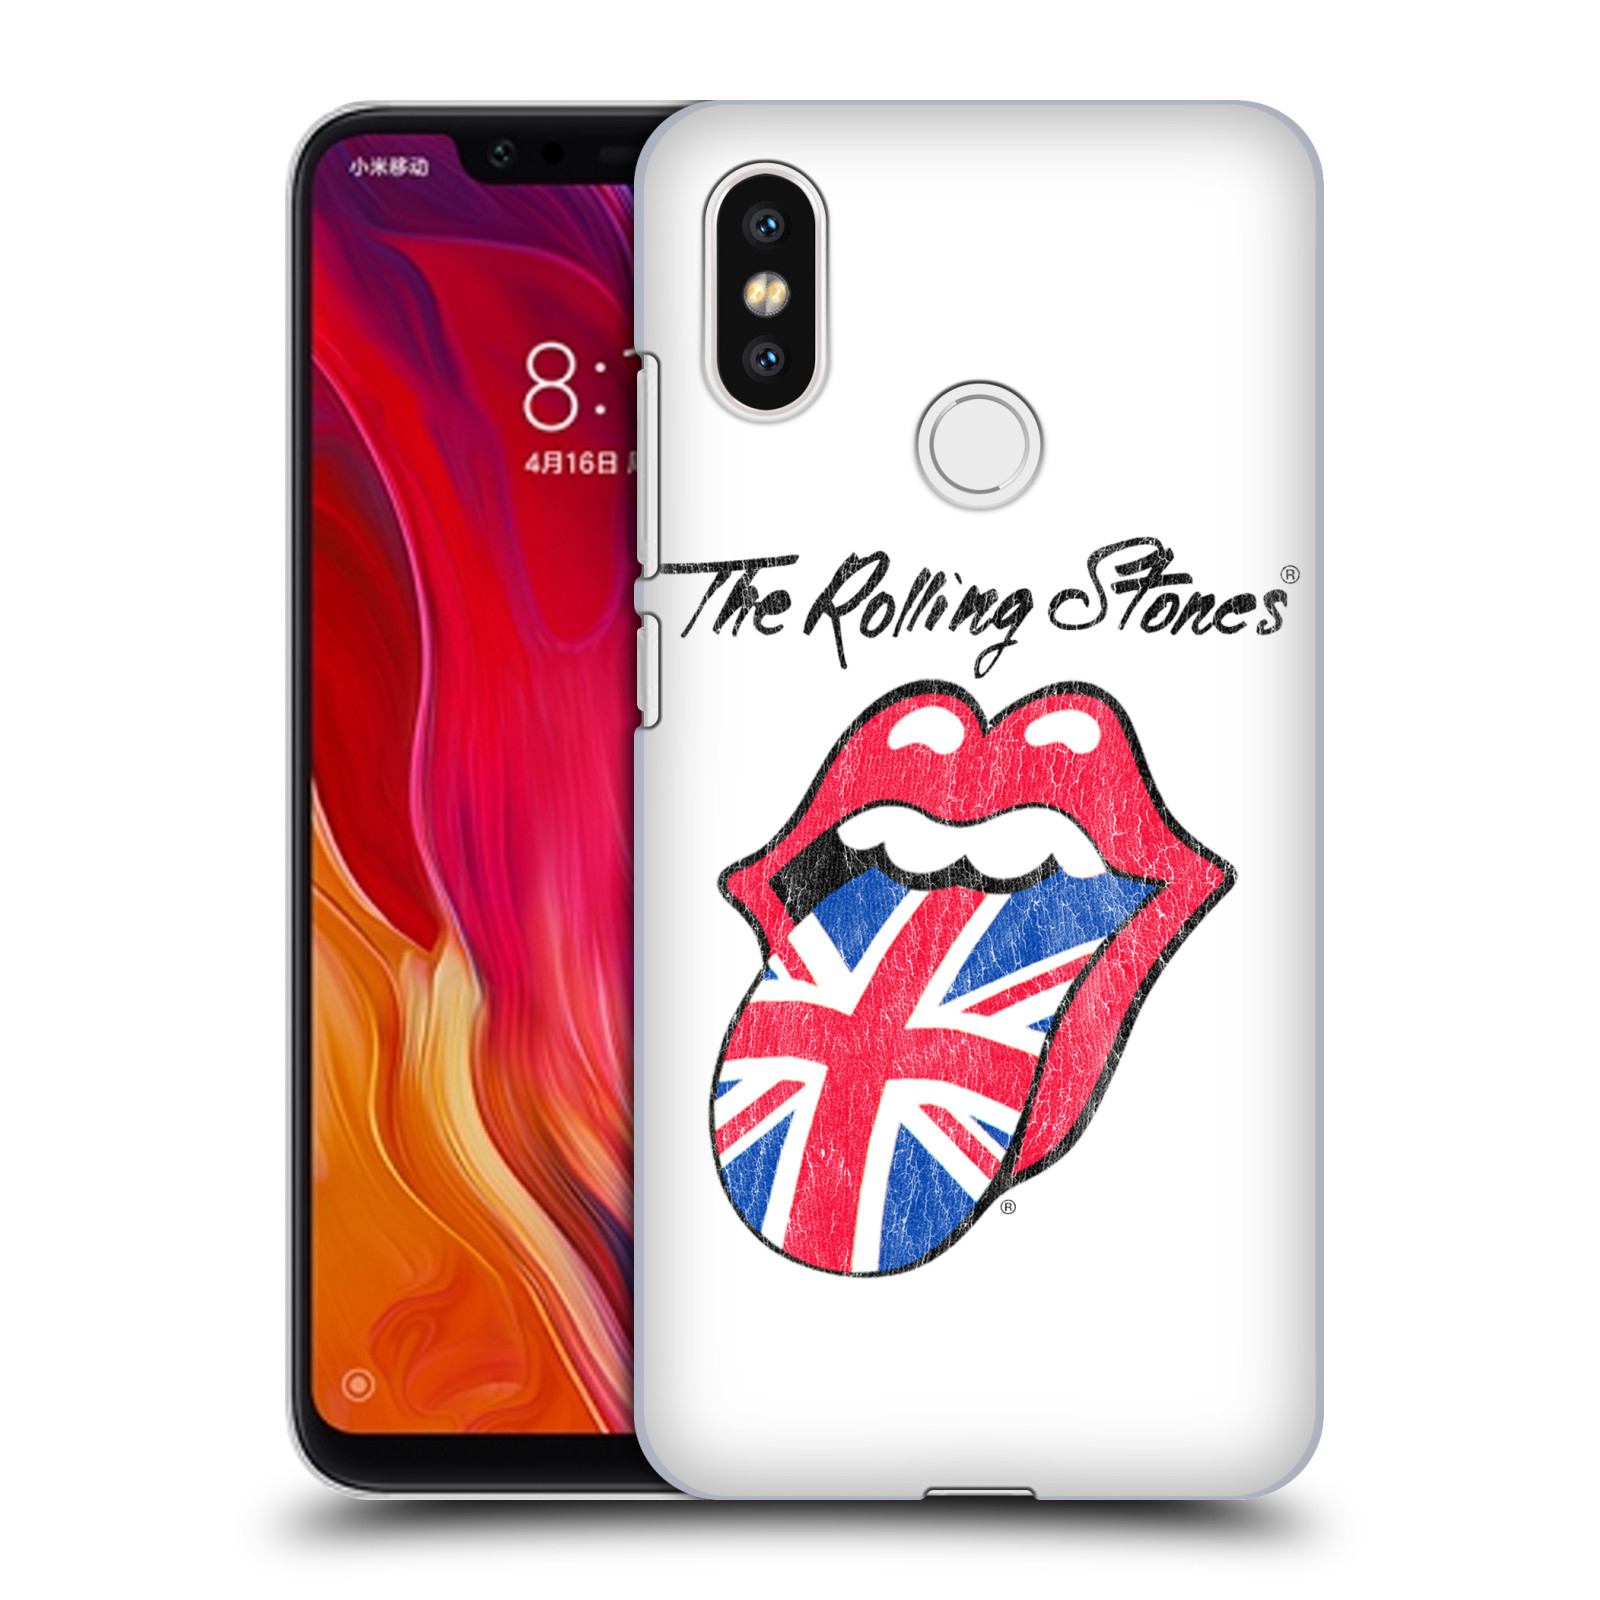 HEAD CASE plastový obal na mobil Xiaomi Mi 8 rocková skupina Rolling Stones bílé pozadí